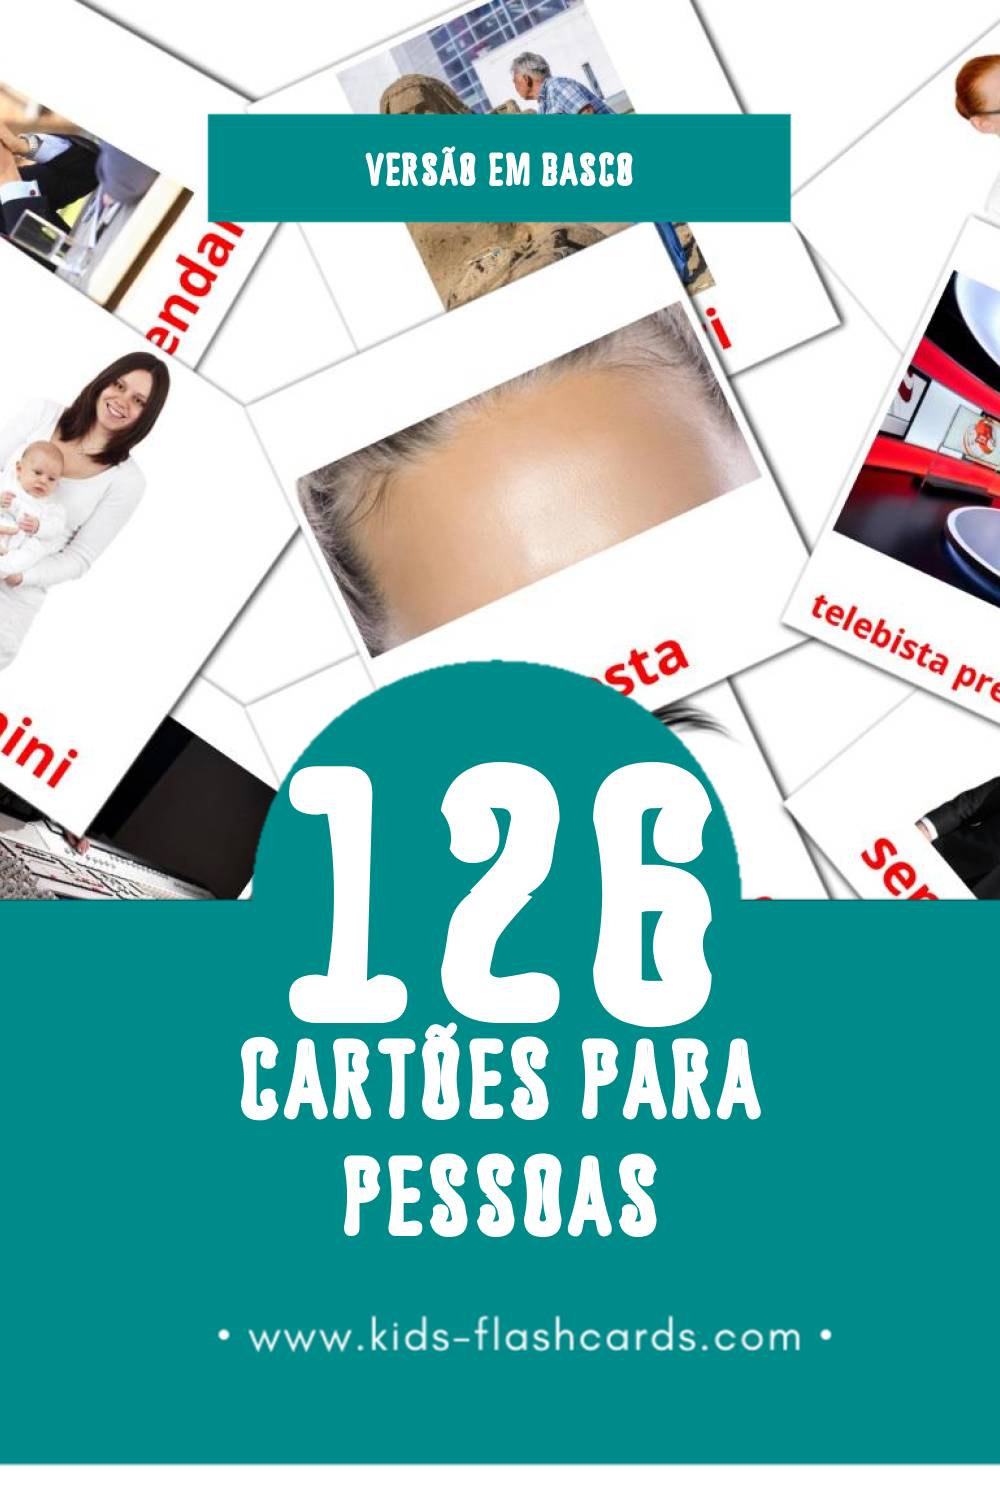 Flashcards de Pertsonak Visuais para Toddlers (126 cartões em Basco)